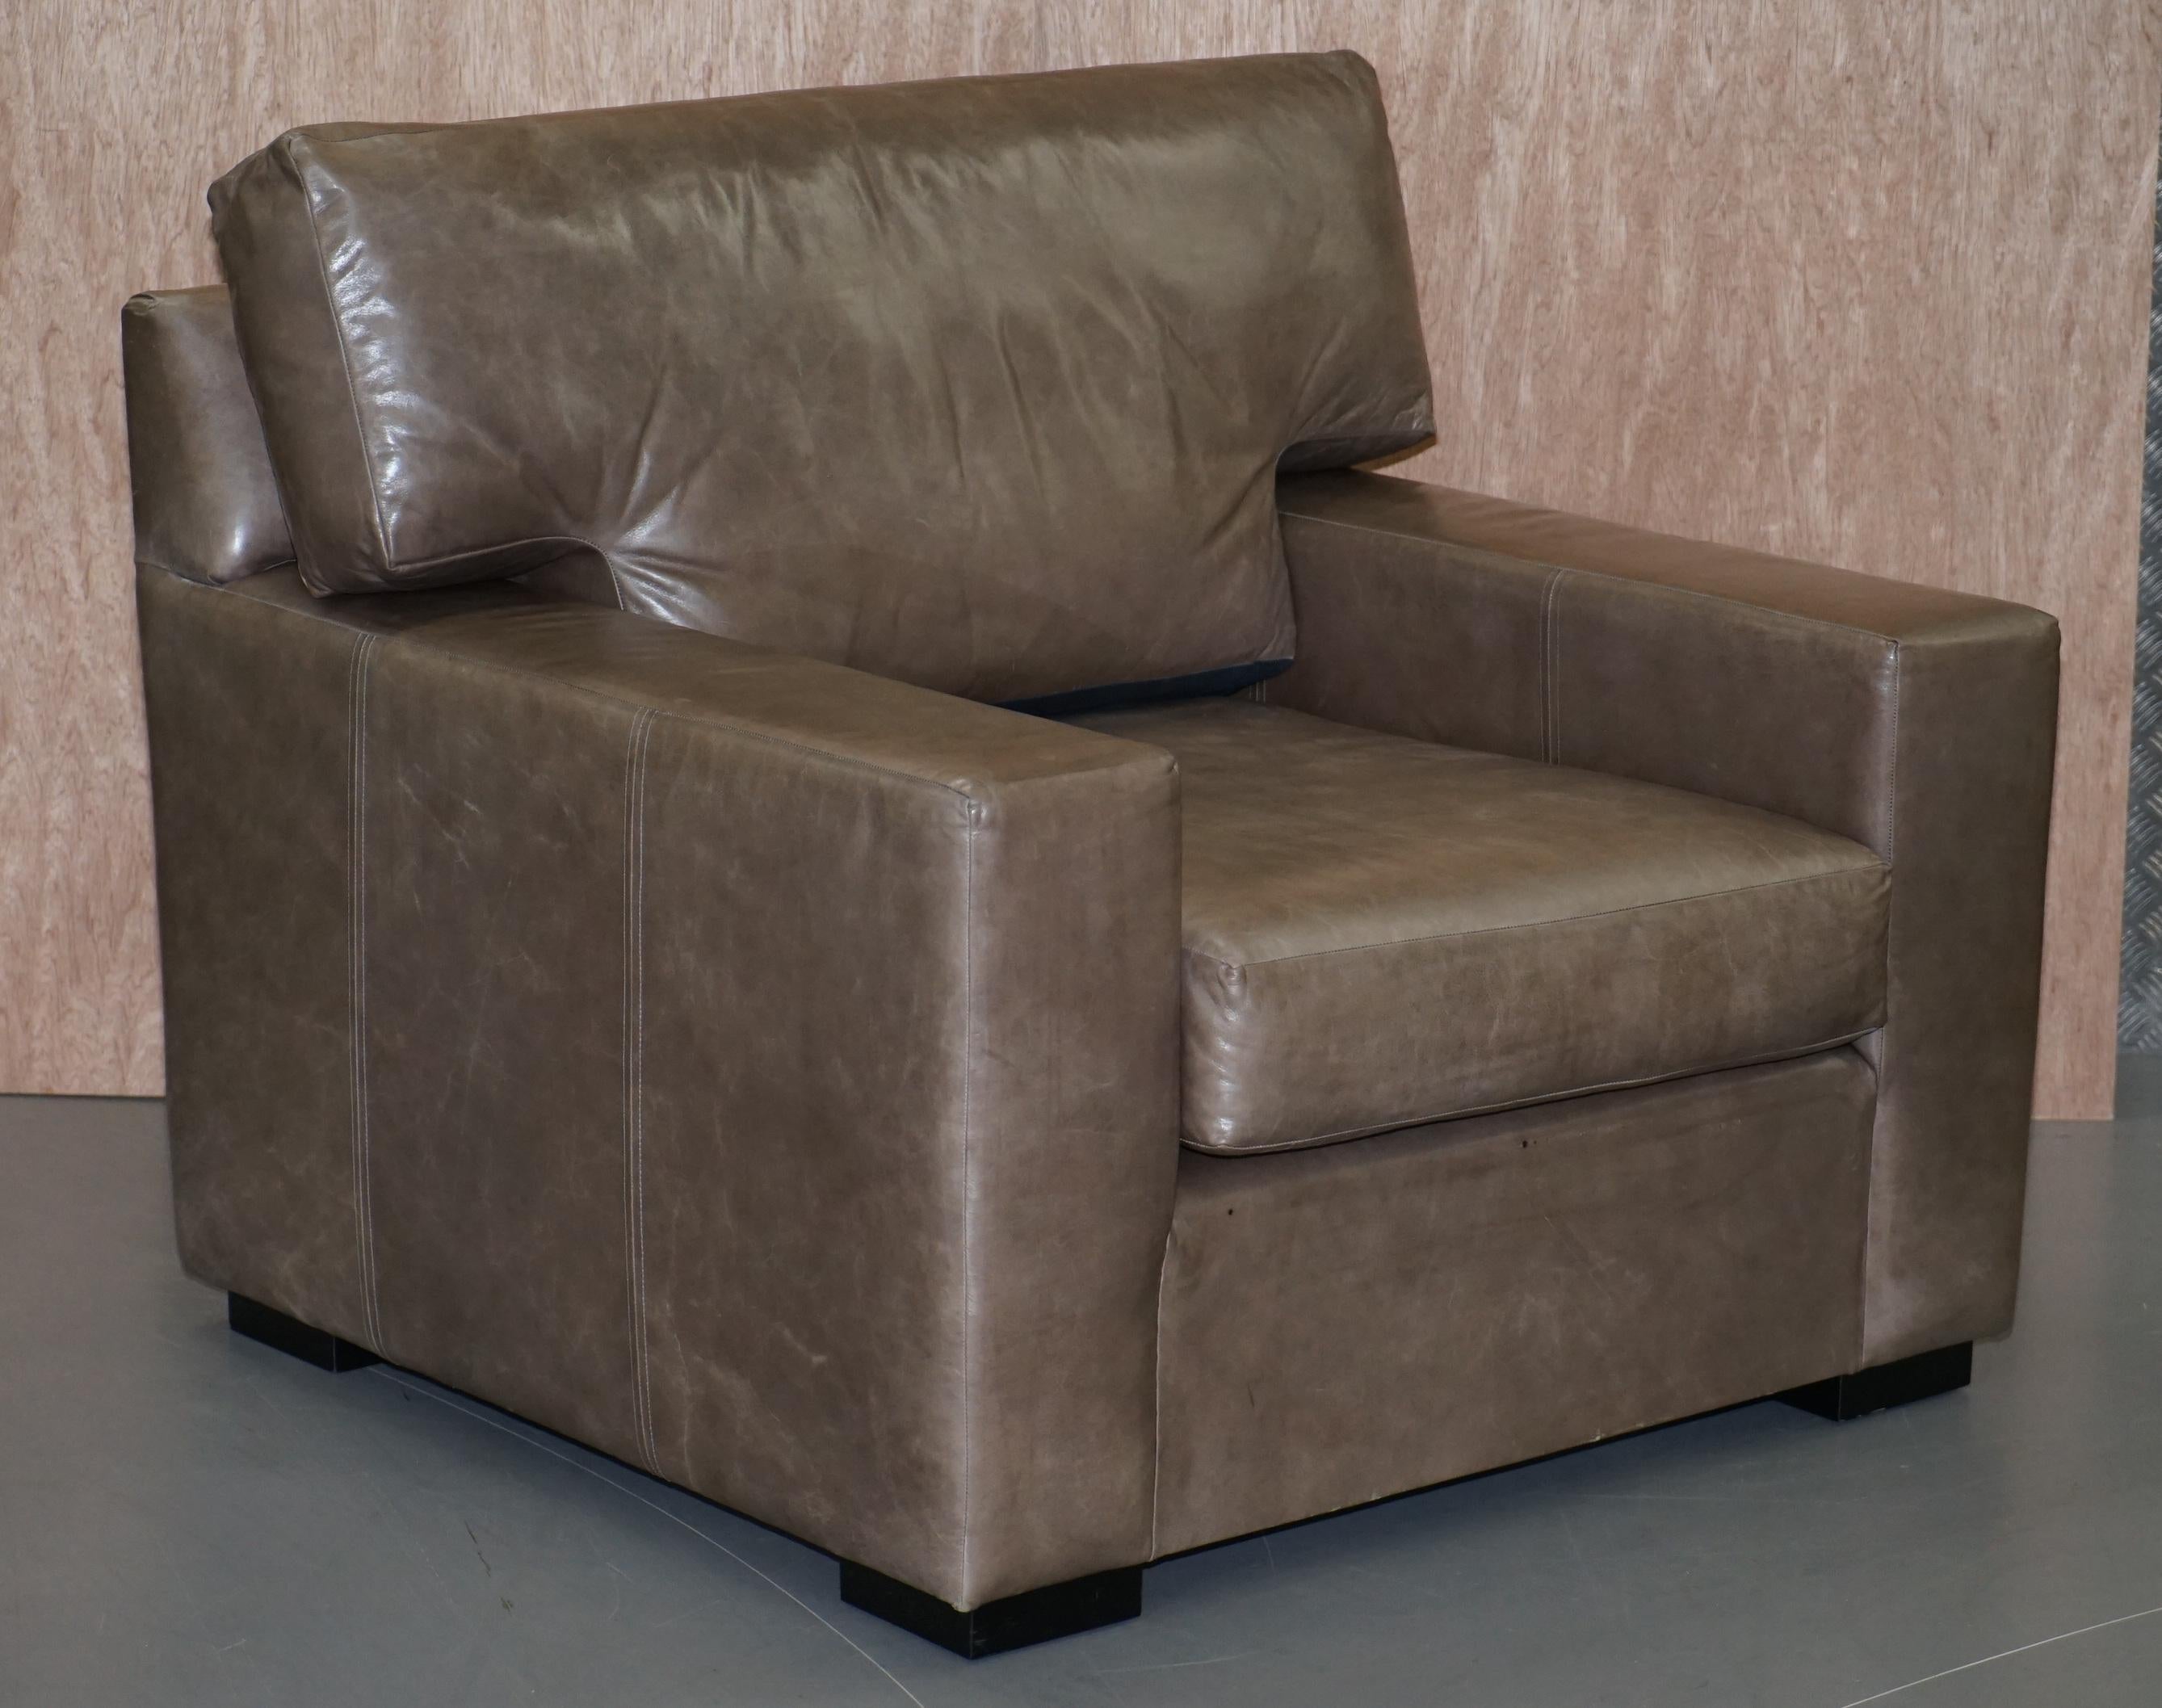 Nous sommes ravis de proposer à la vente cette superbe paire de fauteuils ou love seats contemporains en cuir gris héritage

Il s'agit d'une grande paire de fauteuils très confortables, on peut s'y serrer à deux ou avec les pieds à côté, ce sont